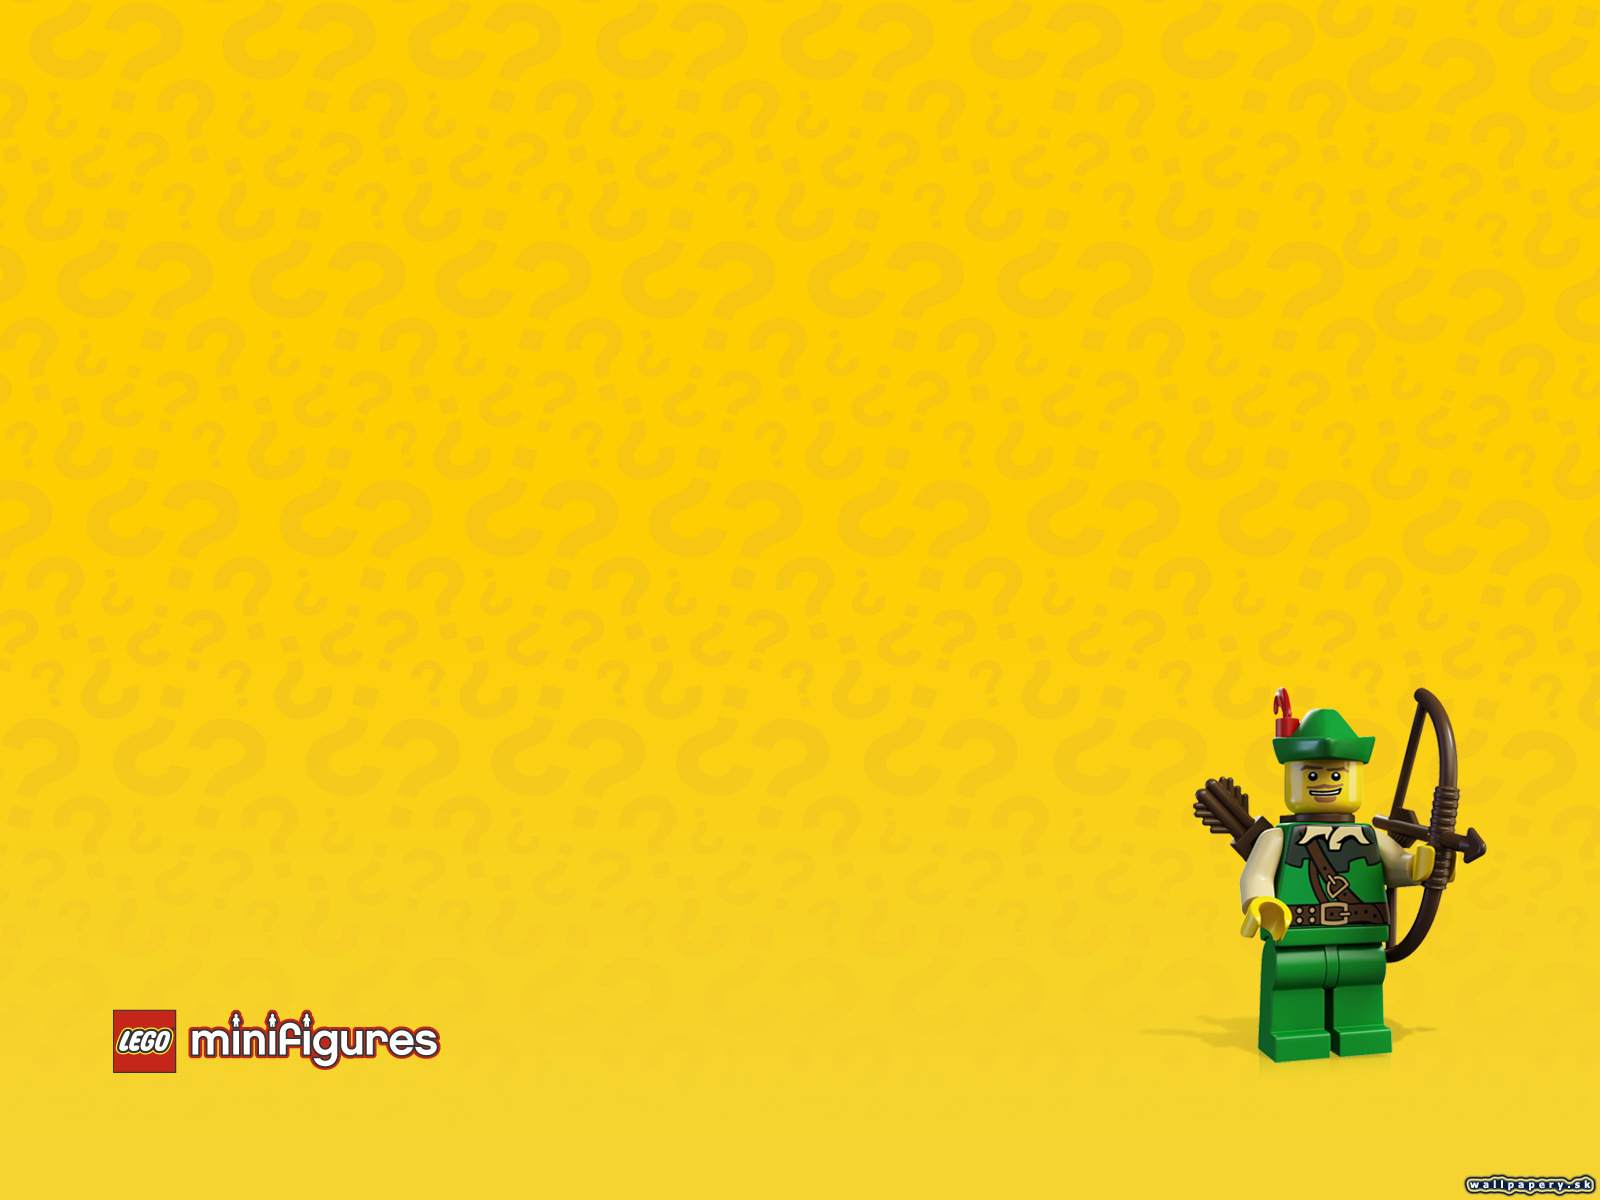 LEGO Minifigures Online - wallpaper 41